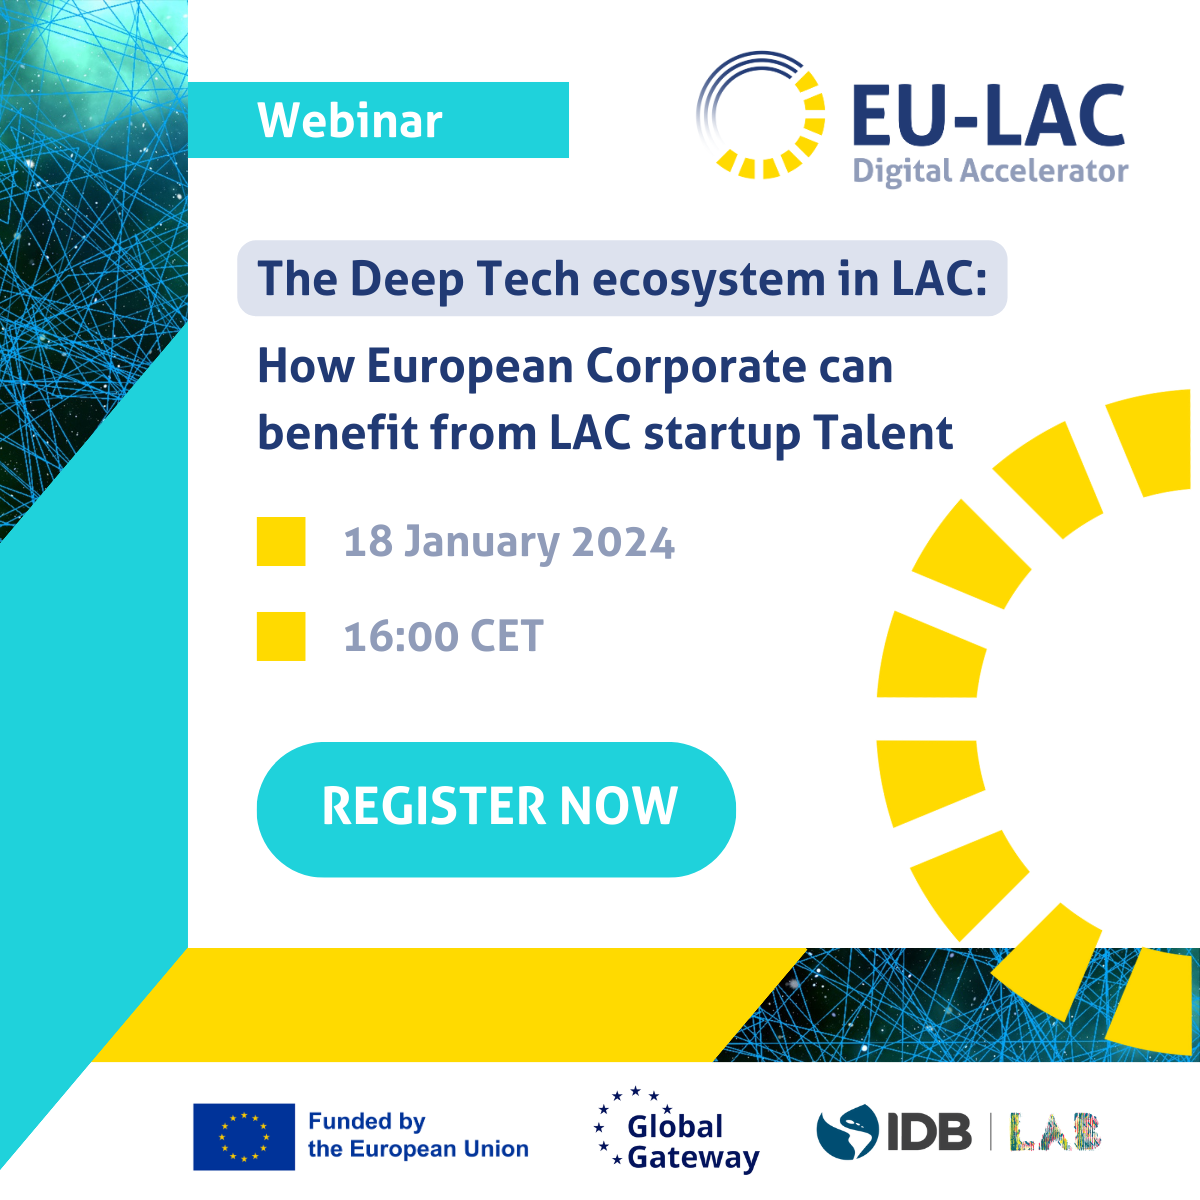 Webinar – L’écosystème Deep Tech en ALC : Comment les entreprises européennes peuvent bénéficier du talent des startups de l’ALC